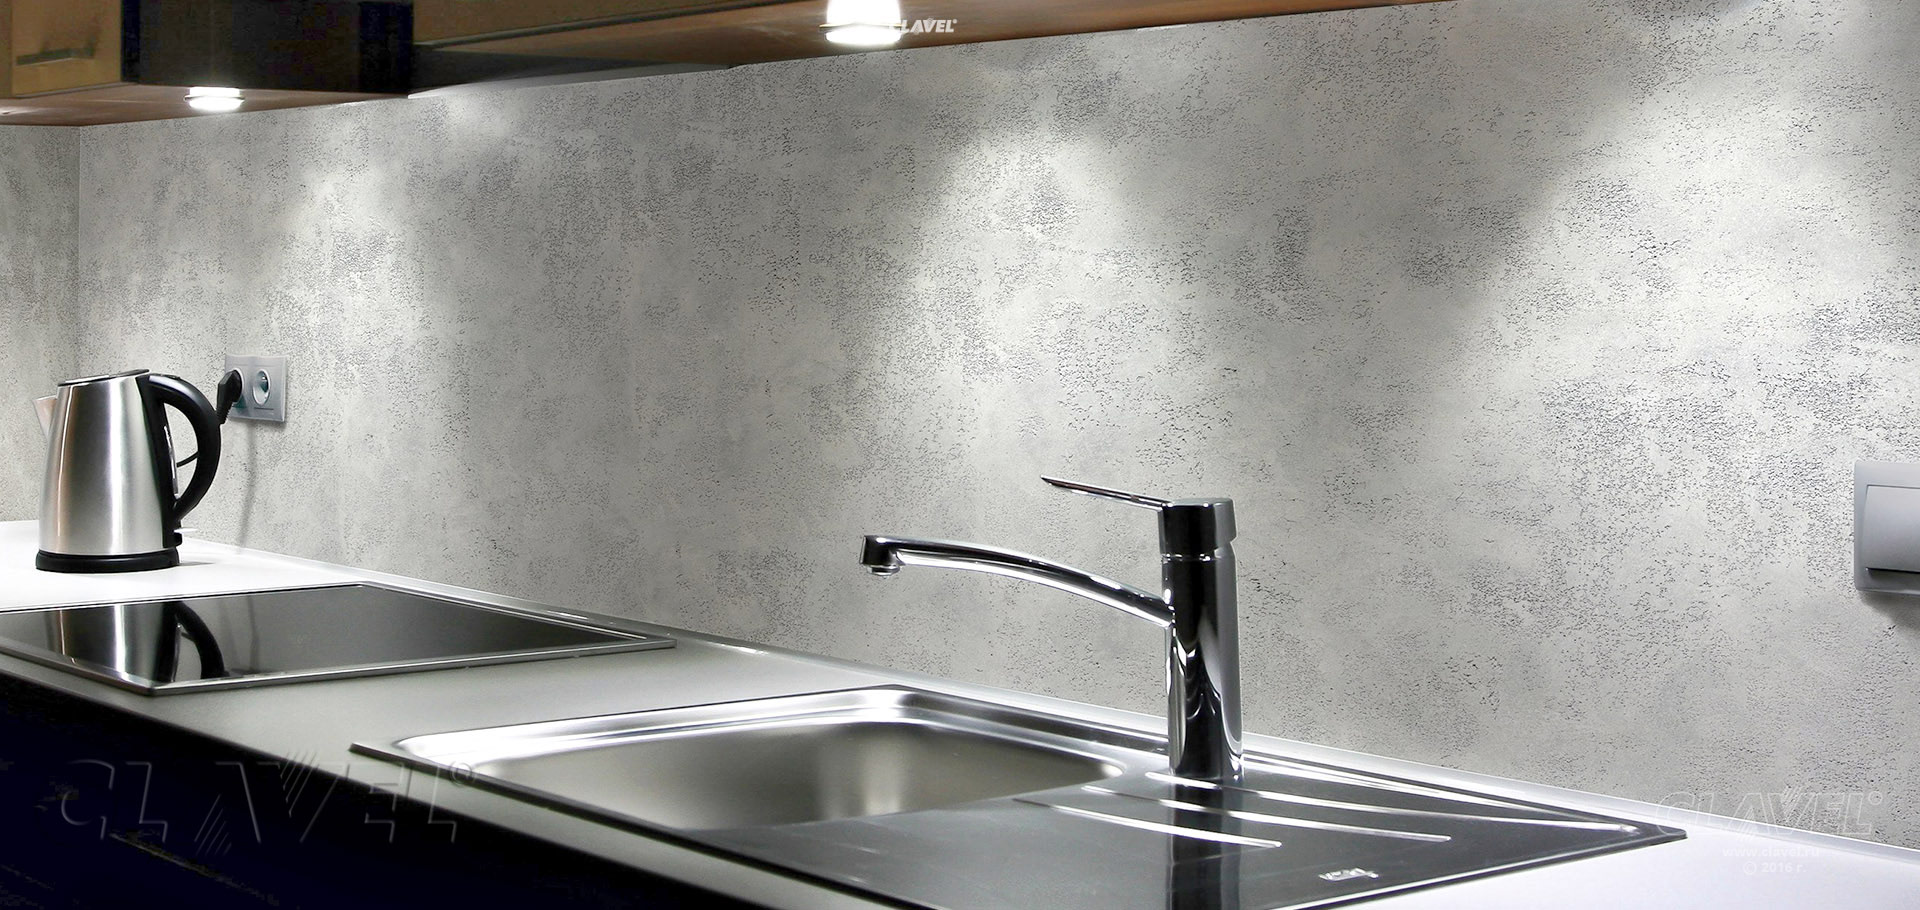 Фактурная штукатурка в интерьере: текстурные покрытия для стен на кухне и в прихожей, варианты для небольшой квартиры (44 фото)